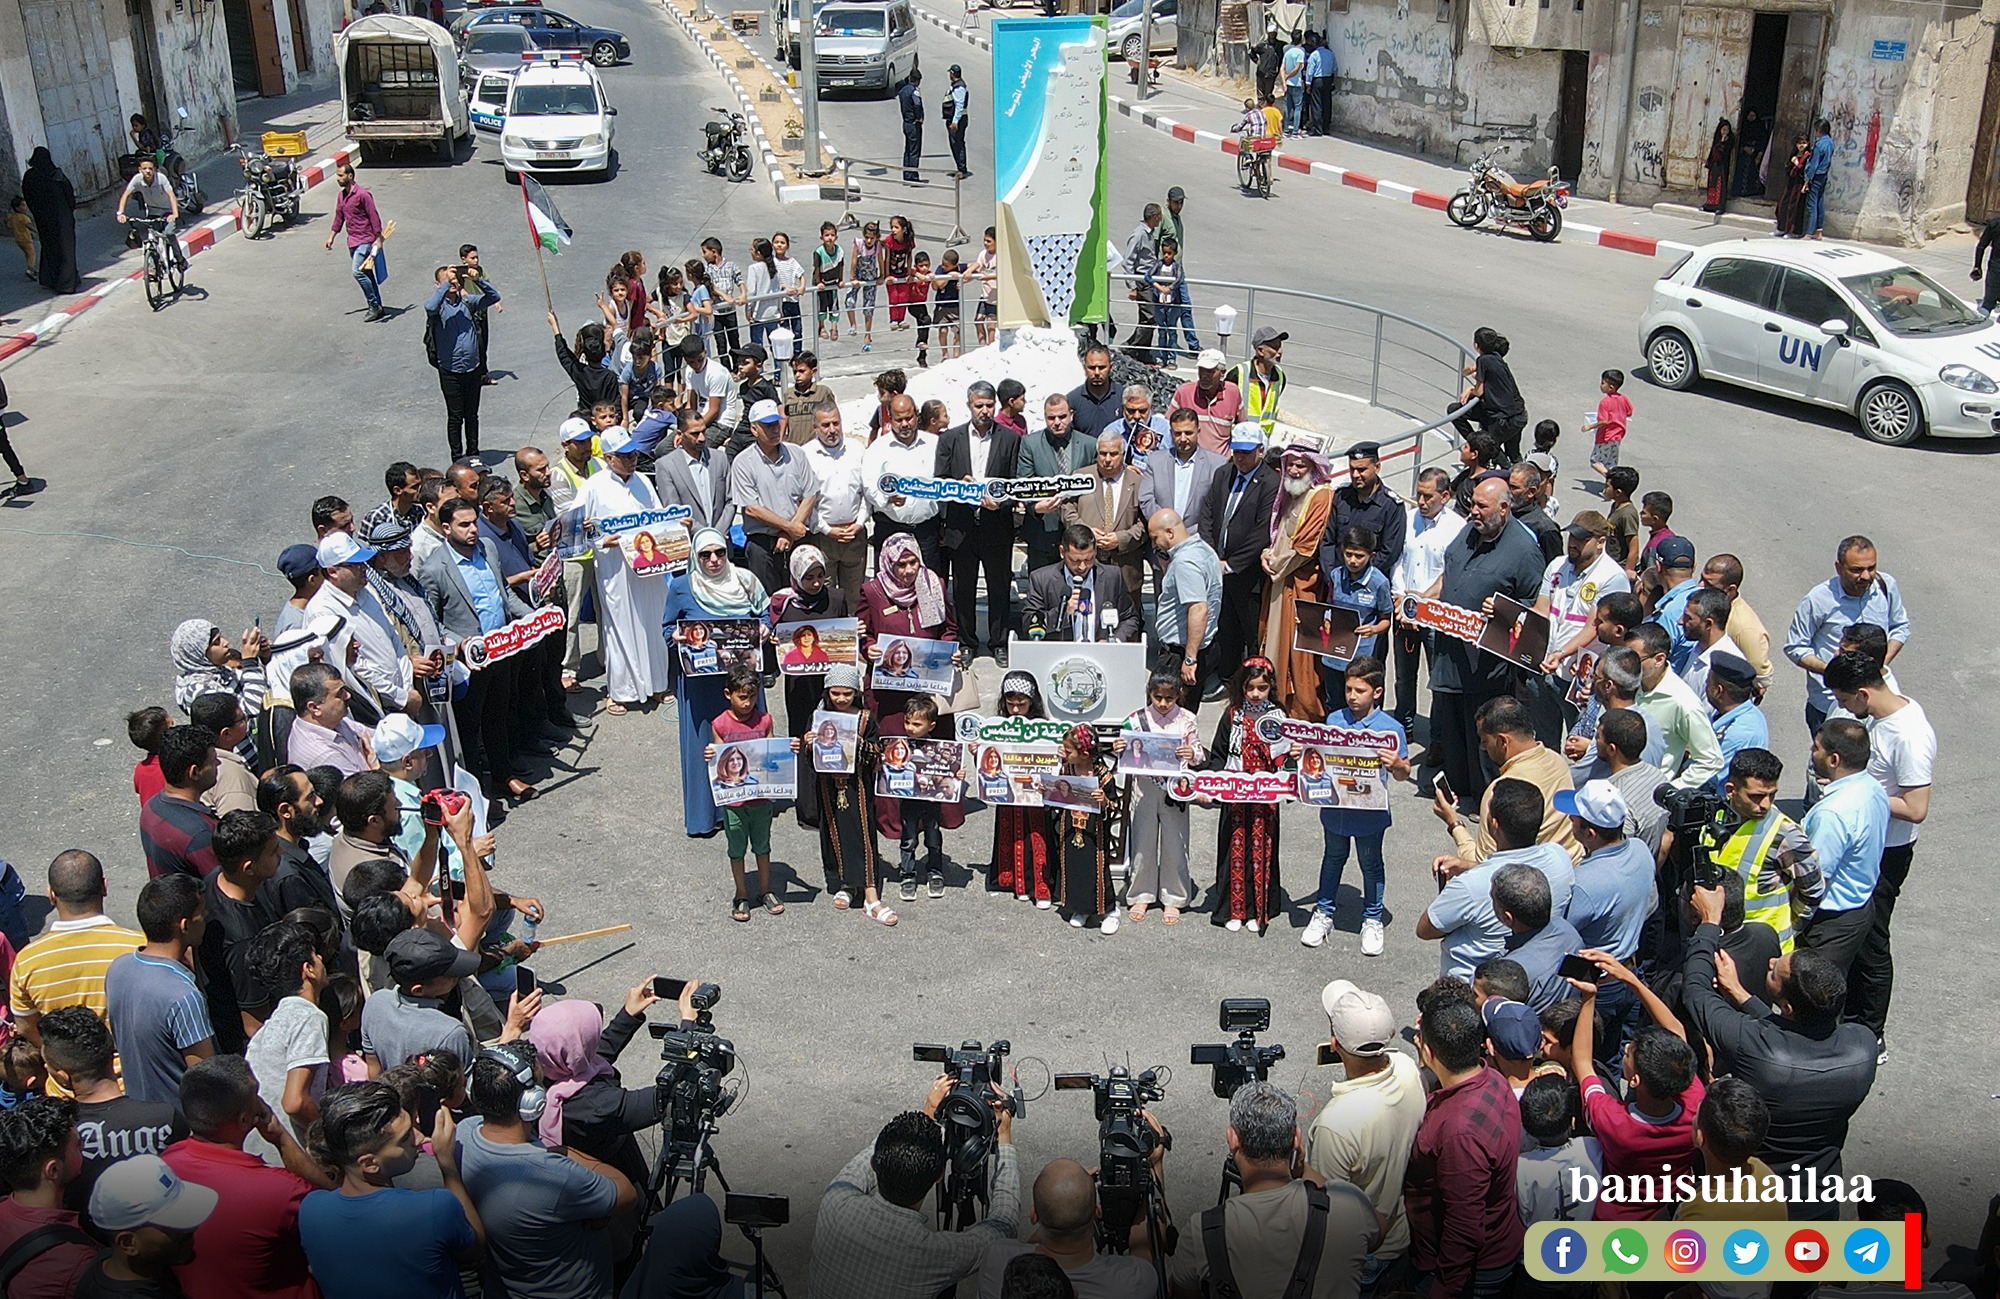 صور من افتتاح ميدان شيرين أبو عاقلة نشرتها صفحة بلدية بني سهيلا على فيسبوك